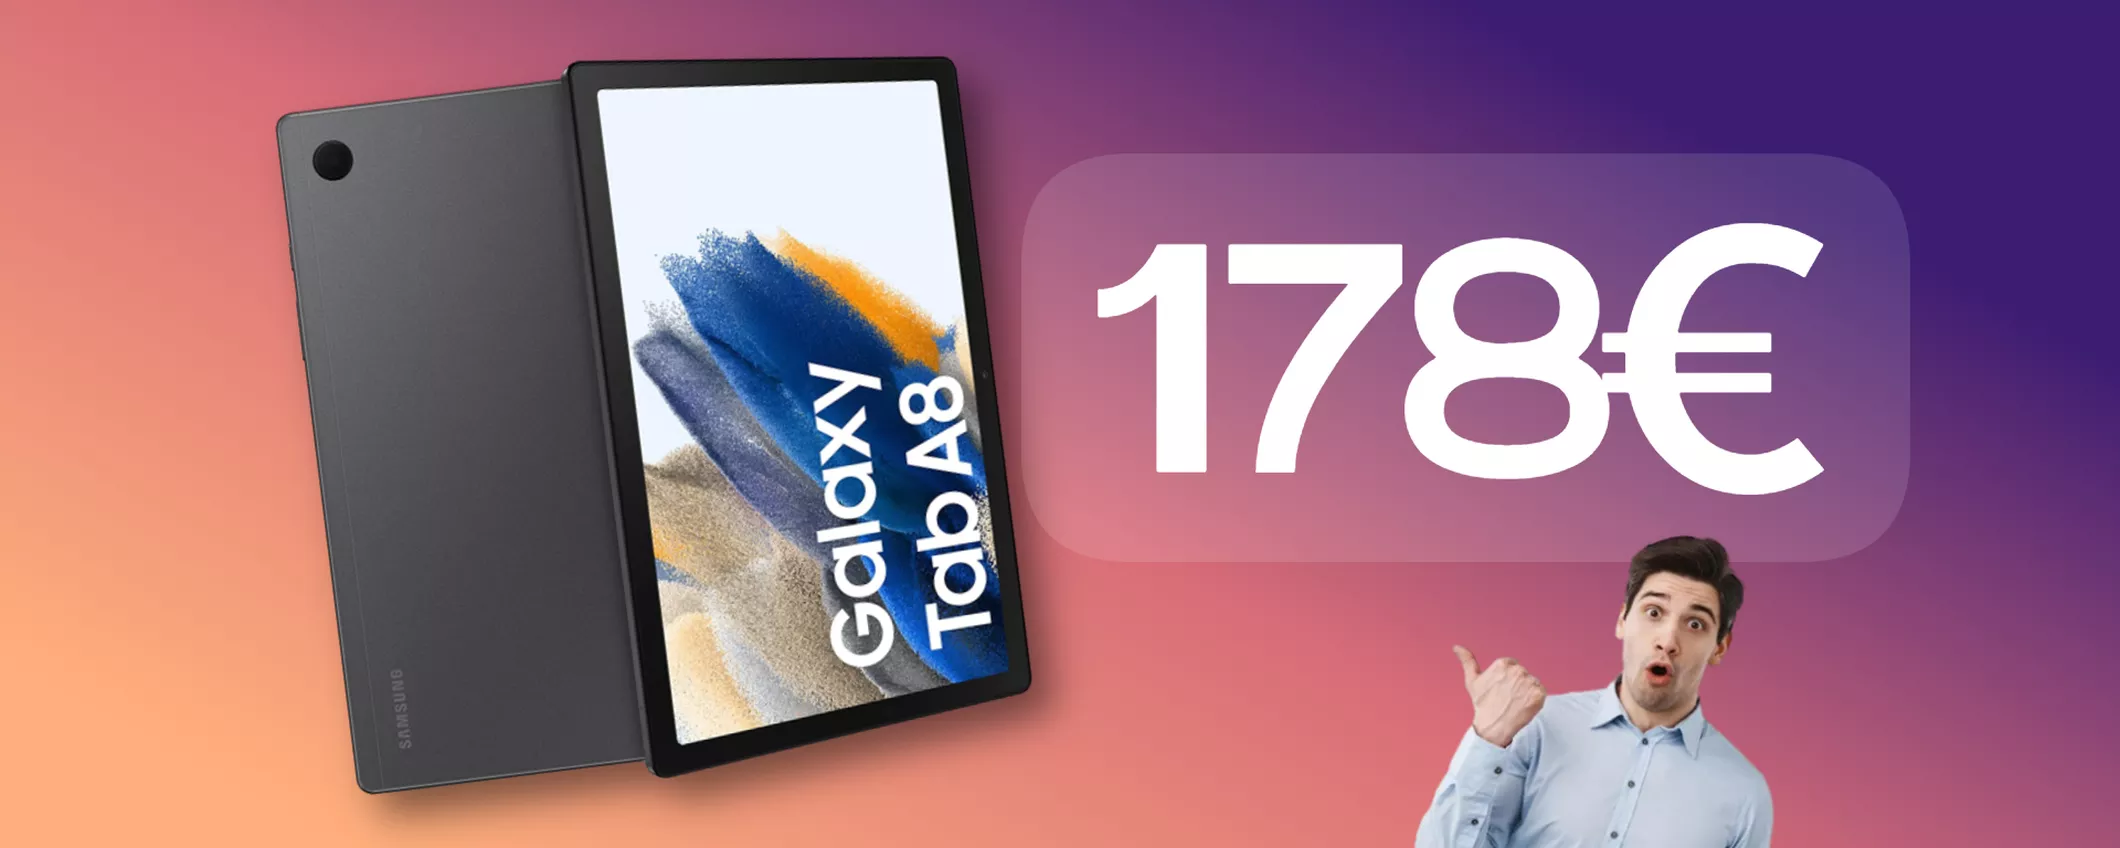 Samsung Galaxy Tab A8 è la migliore alternativa economica agli iPad: solo 178€!